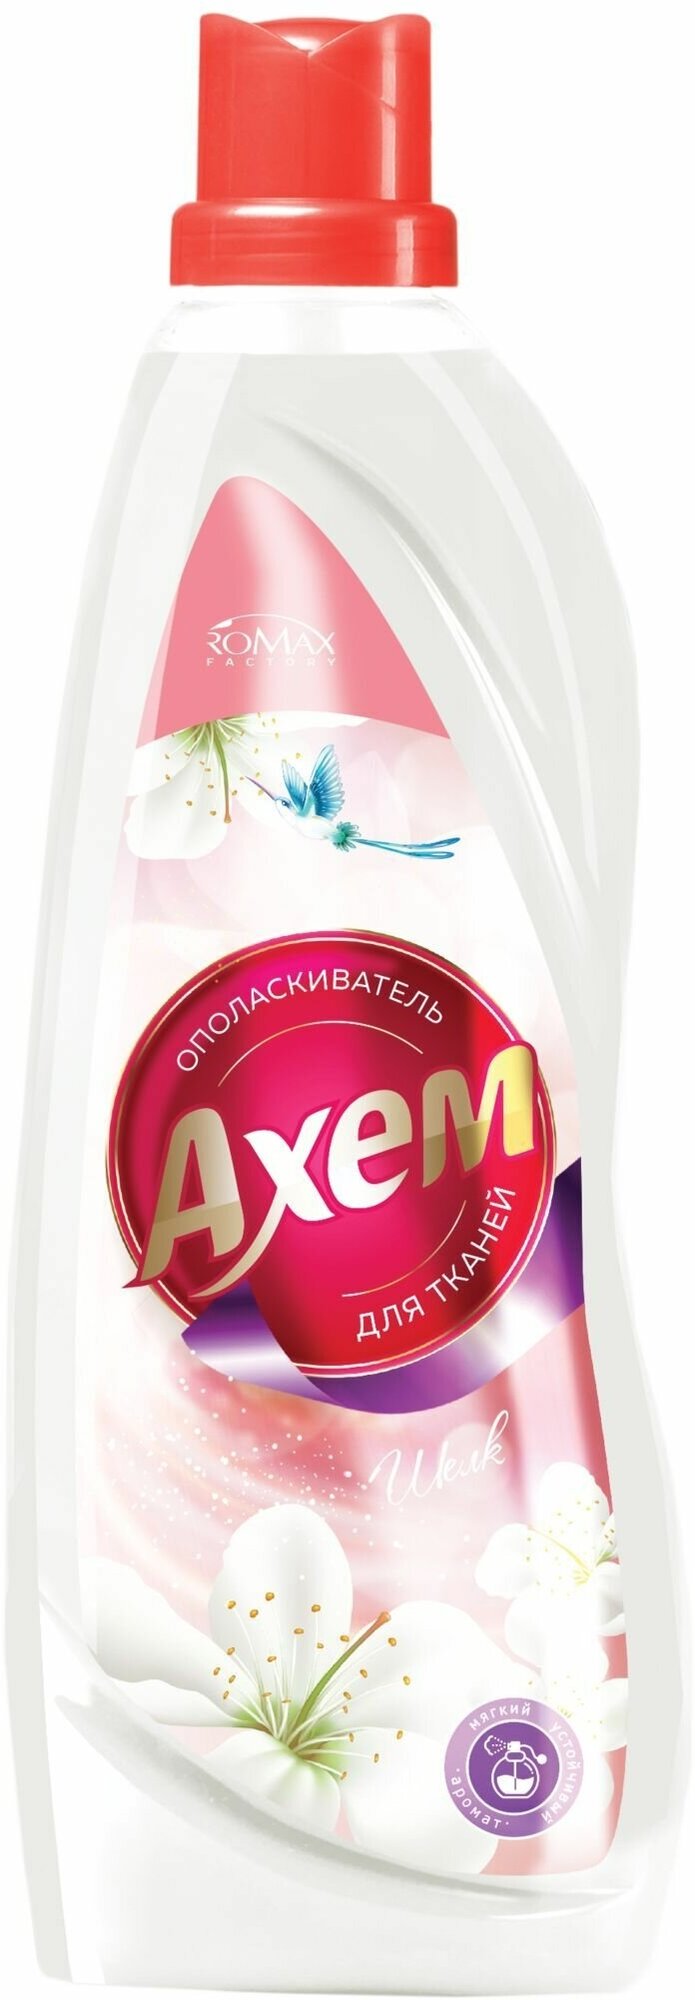 Romax Кондиционер AXEM для белья ополаскиватель-антистатик шёлк, 1 л